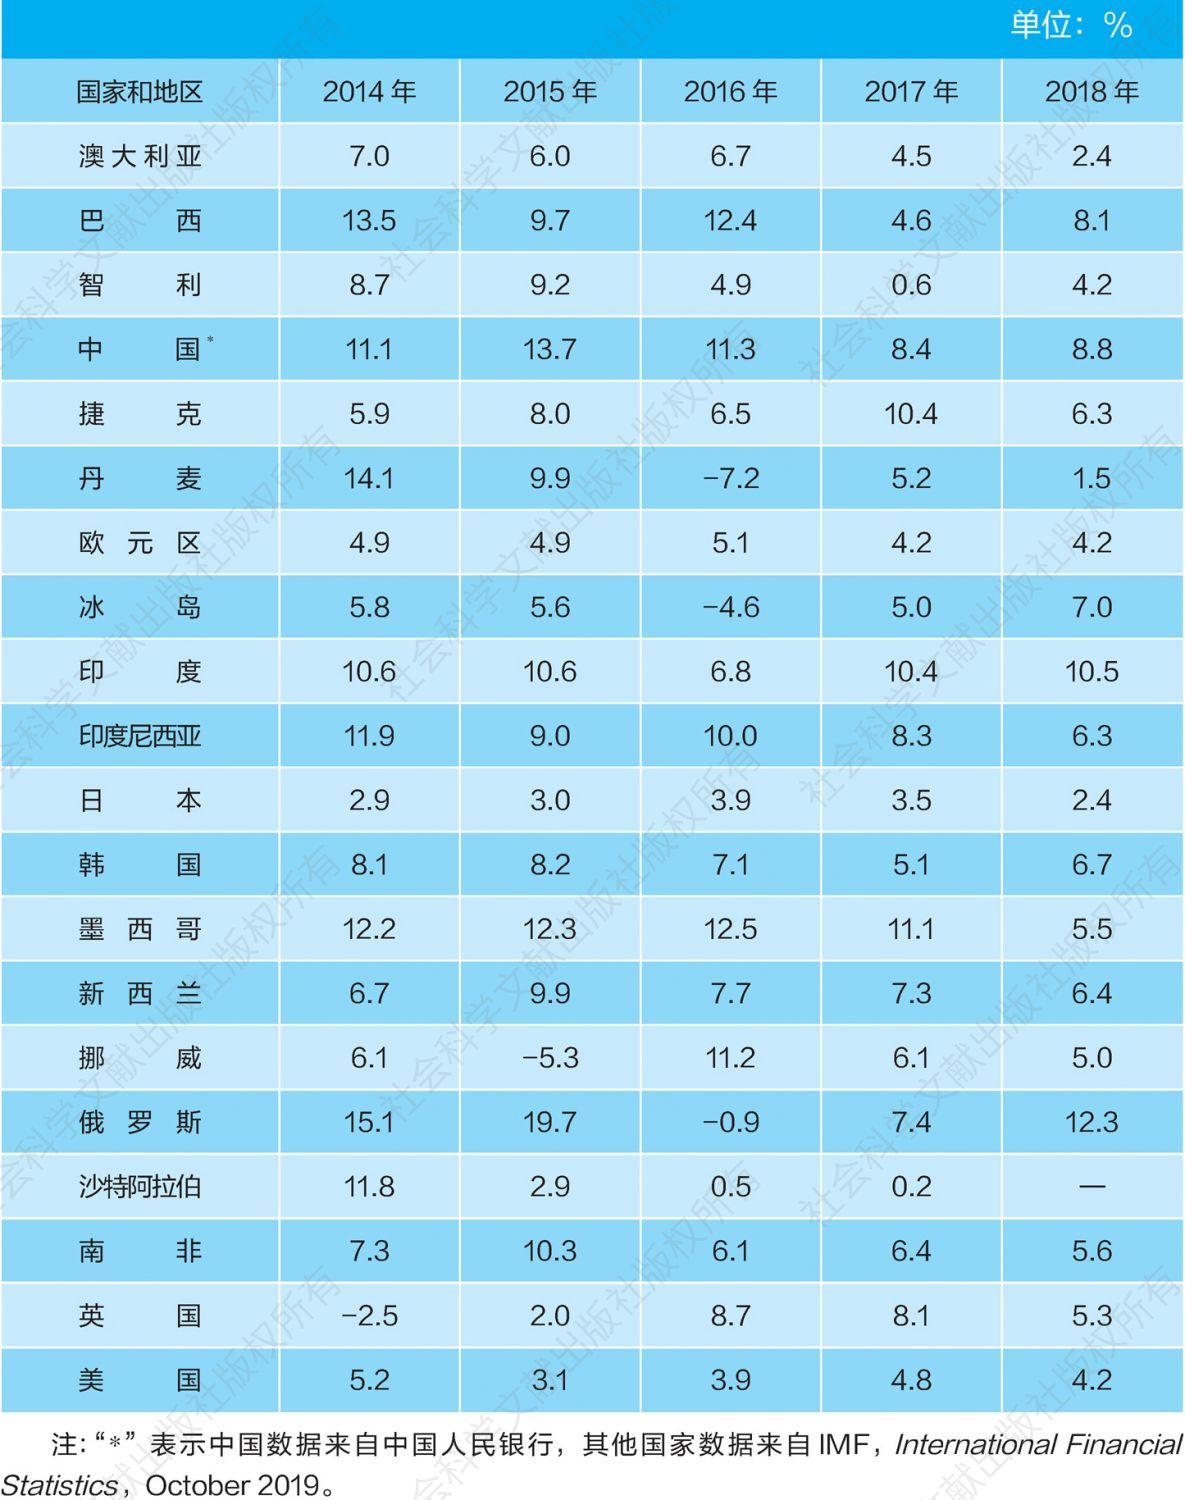 表4-1 广义货币供应量年增长率：部分国家和地区（2014～2018年）